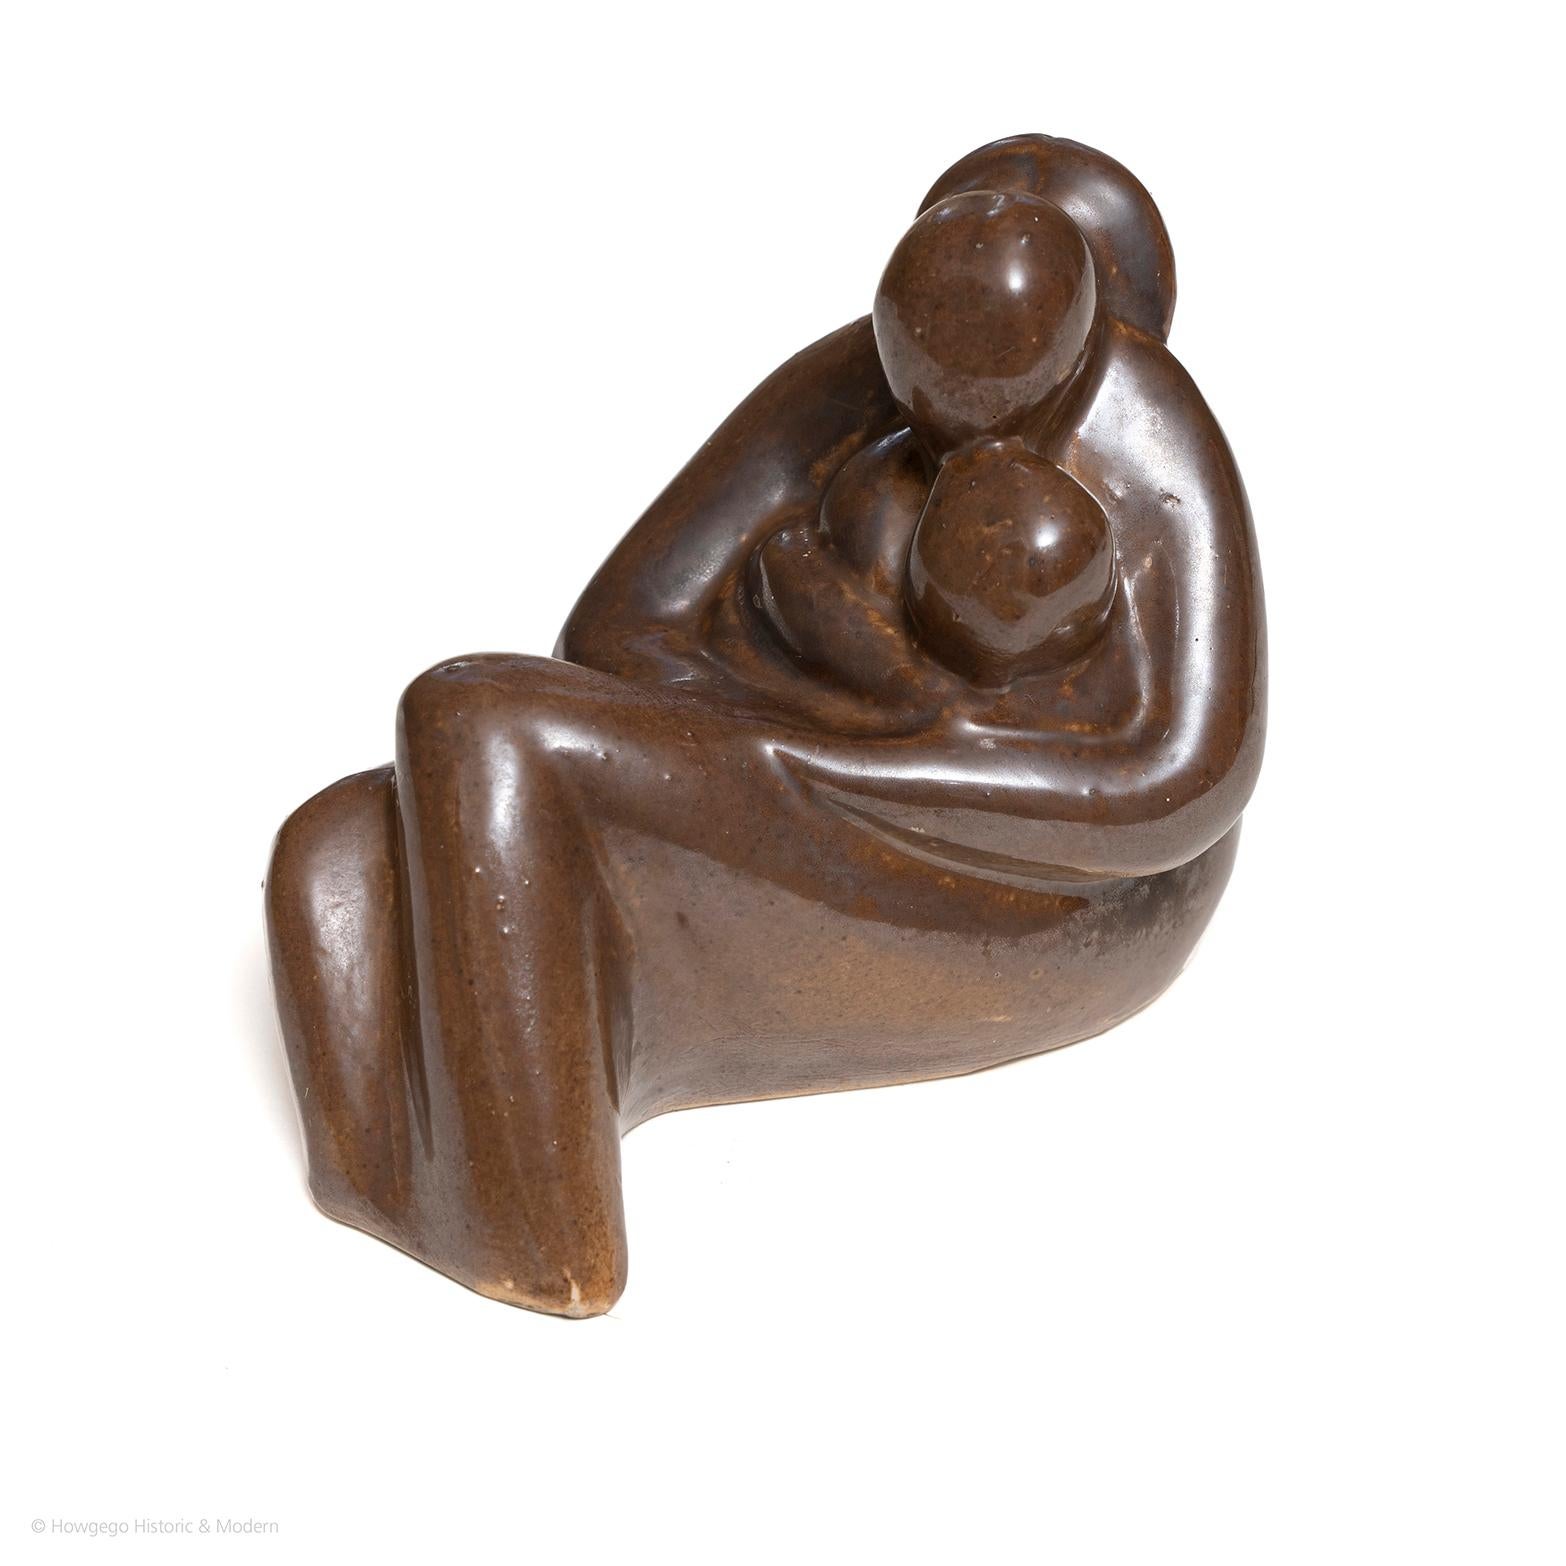 Petite sculpture biomorphique en poterie de 12,5 cm de haut représentant une mère dans une pose allongée tenant deux enfants.  glaçage brun.  Le fond est estampillé 